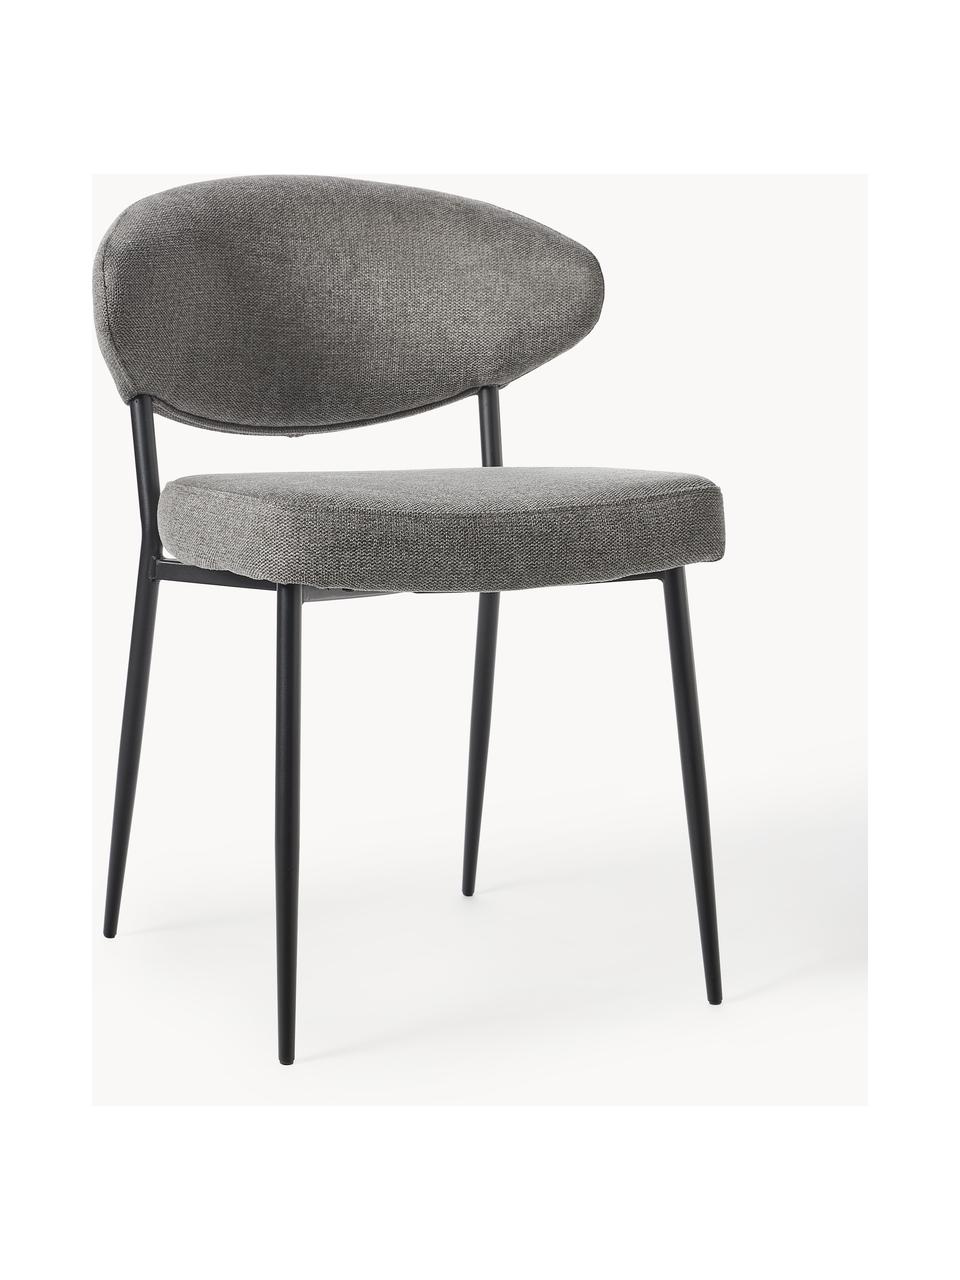 Krzesło tapicerowane Adele, 2 szt., Tapicerka: 95% poliester, 5% nylon D, Stelaż: metal malowany proszkowo, Szara tkanina, S 54 x G 57 cm